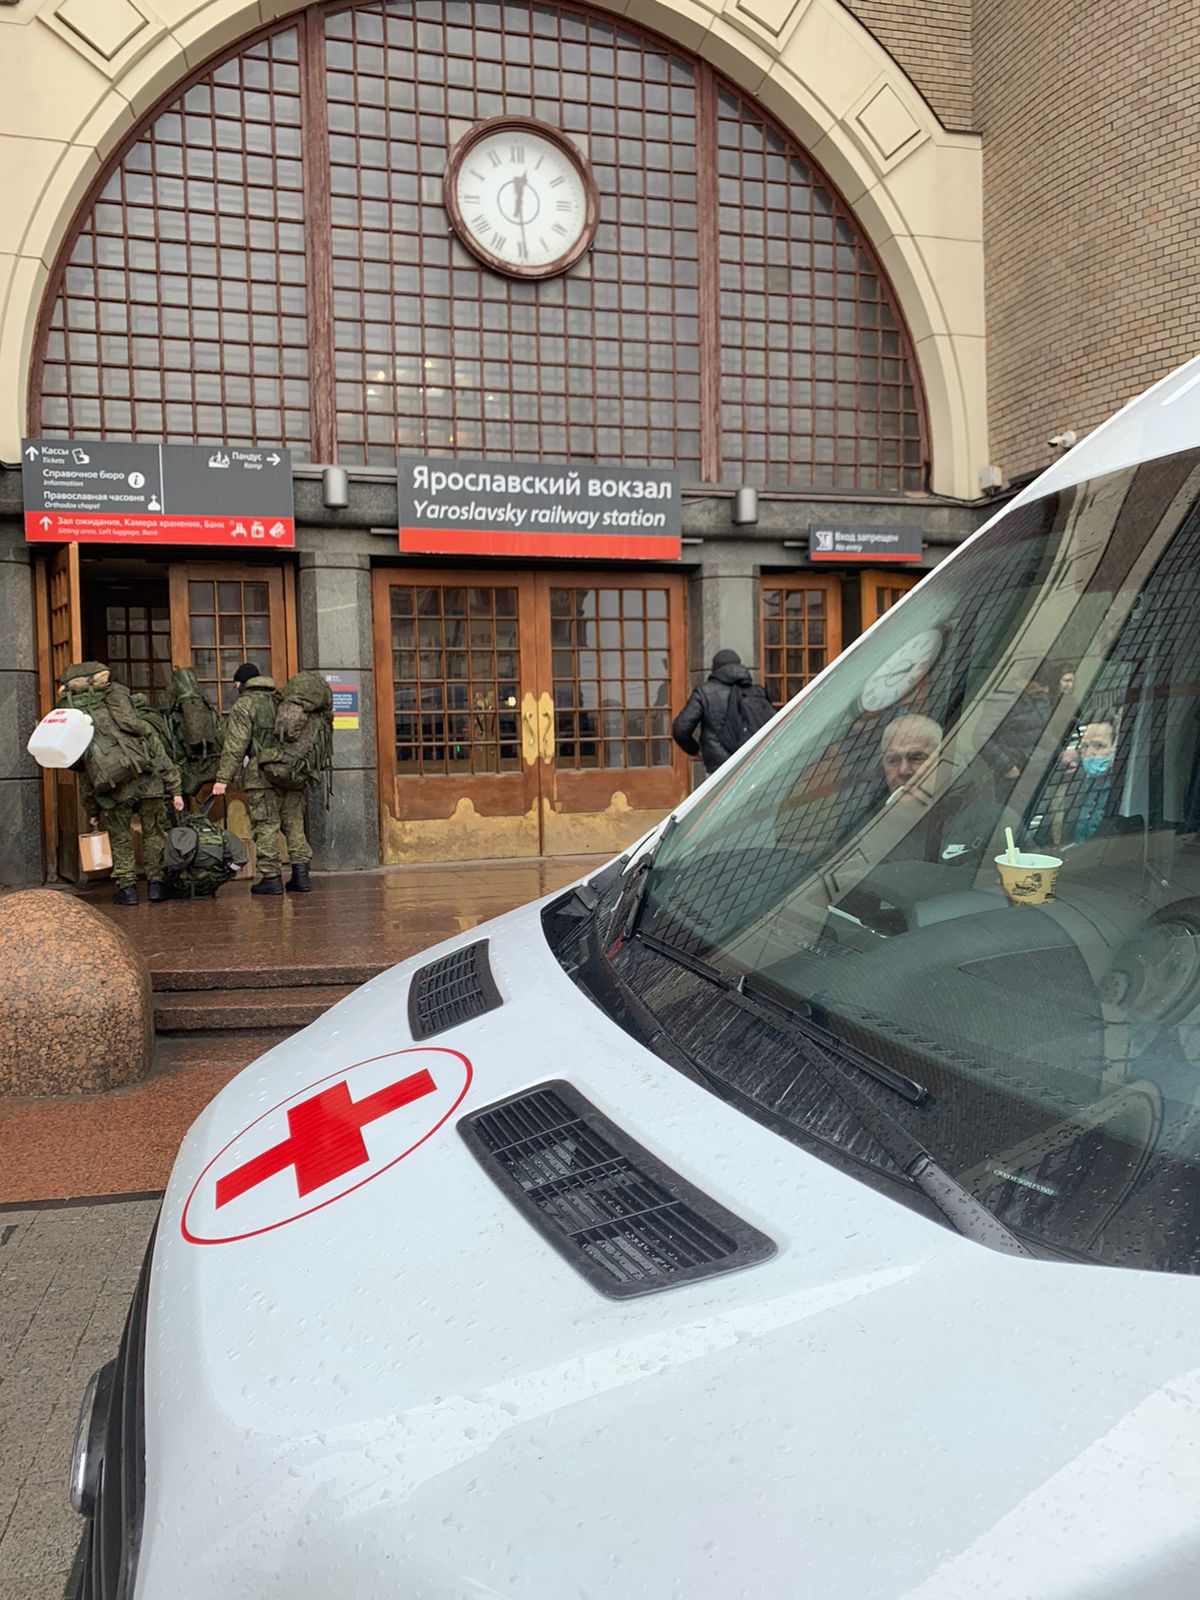 Встреча пациента на Ярославском вокзале для транспортировки на лечение. 3